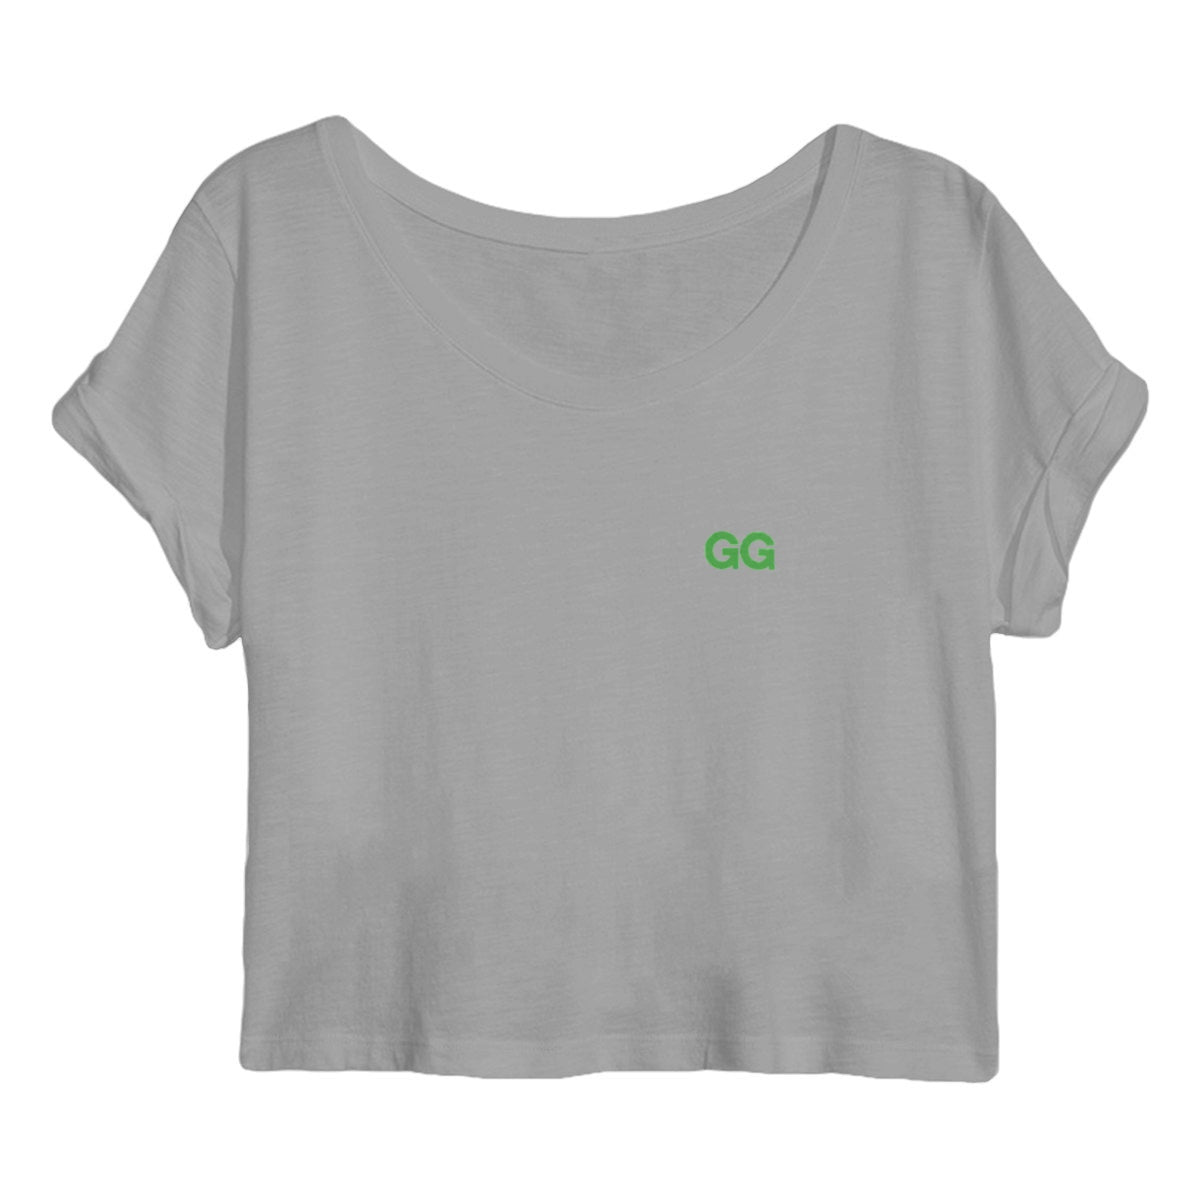 Green GG Women's Crop Top